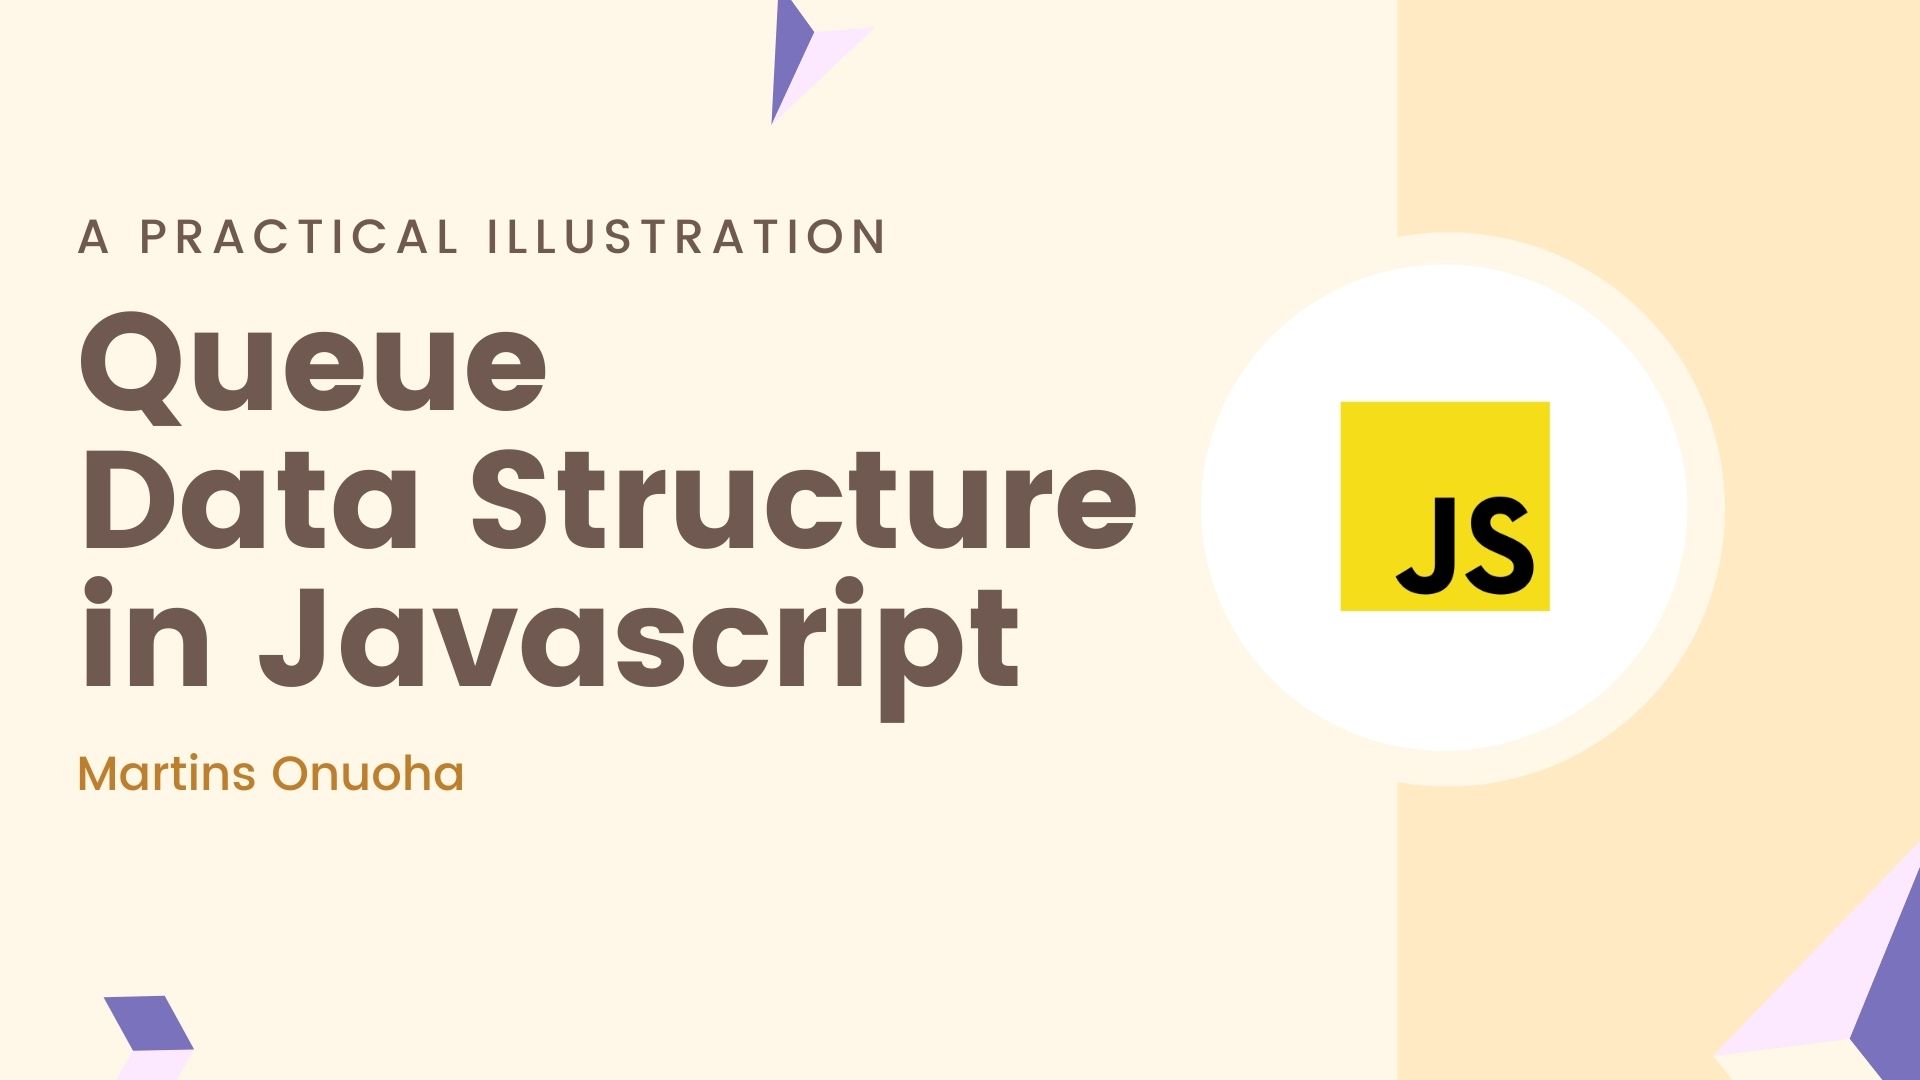 Queue Data Structure in JavaScript